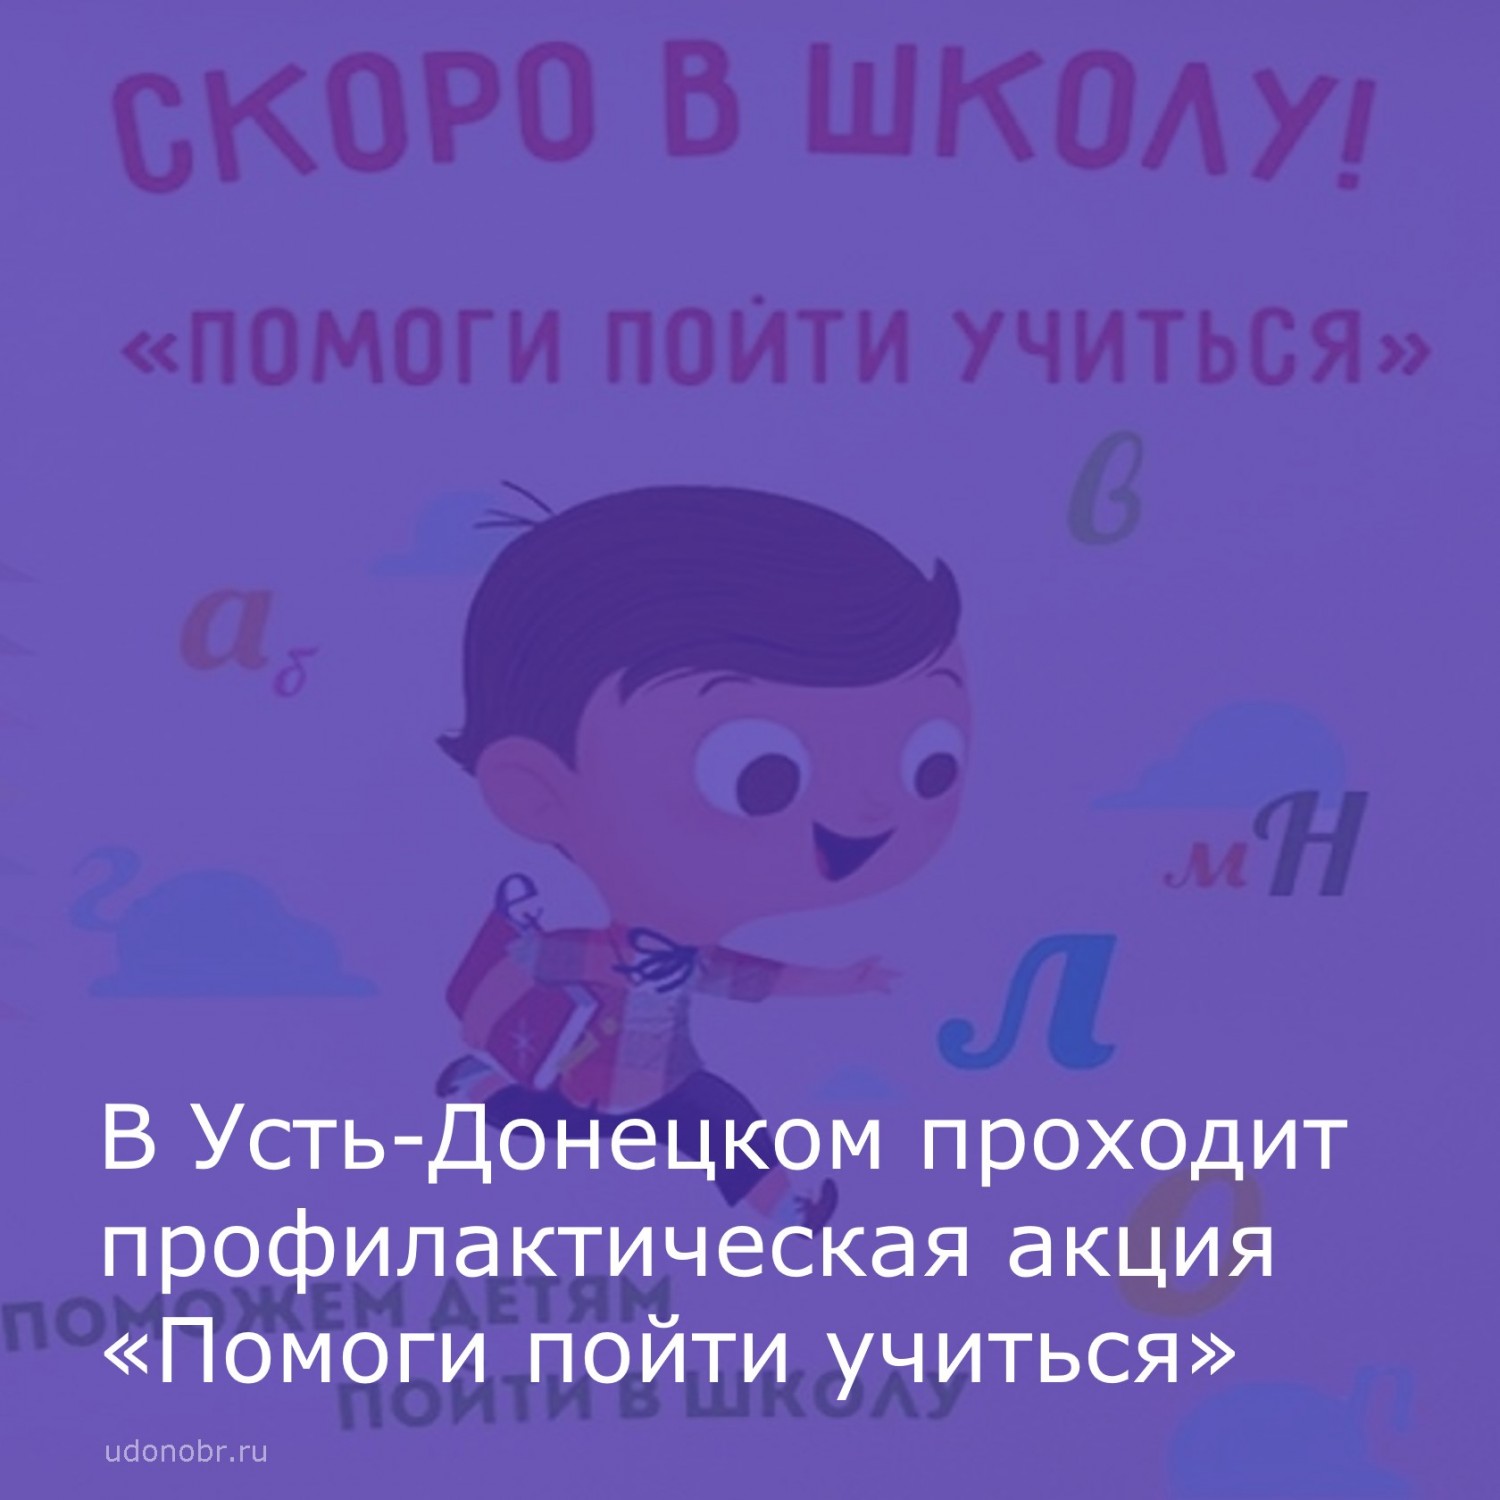 В Усть-Донецком проходит профилактическая акция «Помоги пойти учиться»